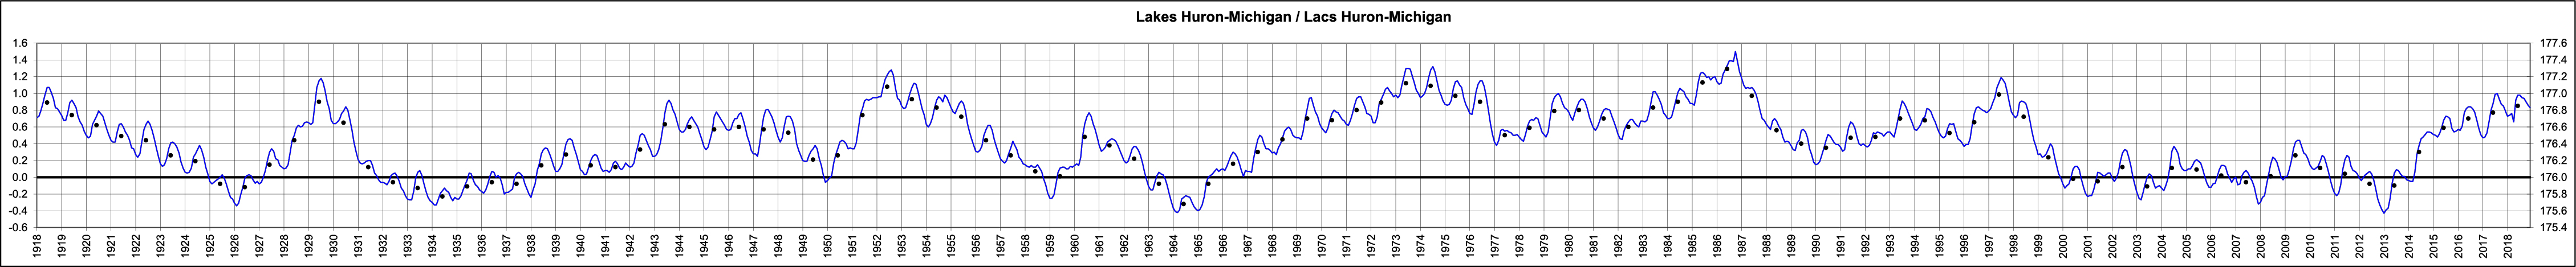 Lake Huron-Michigan